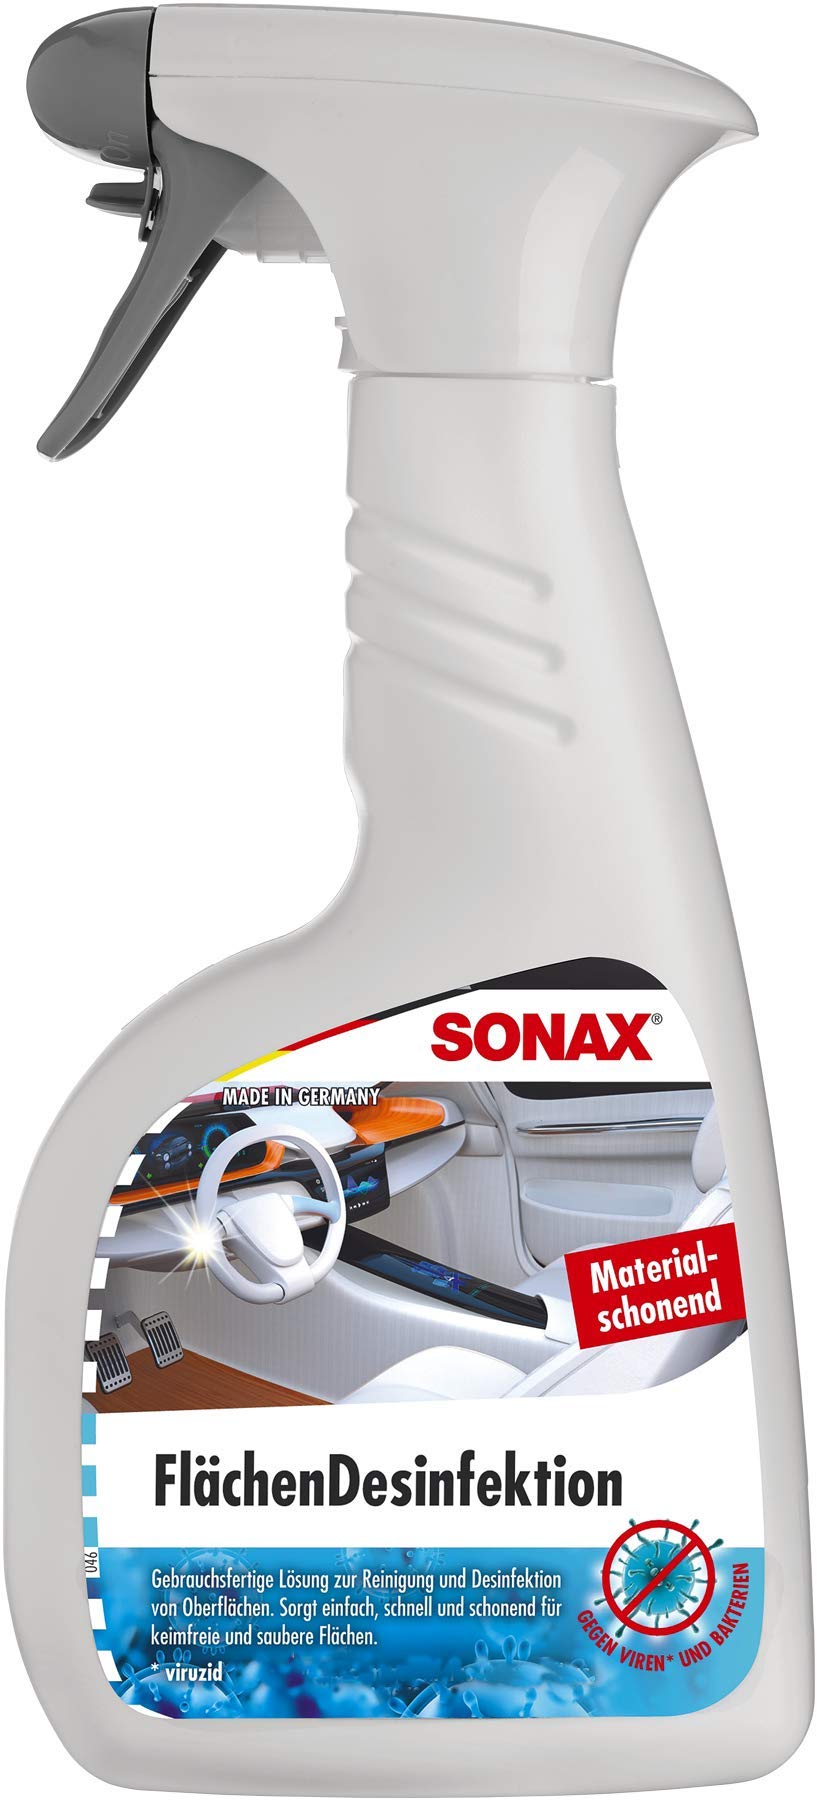 SONAX Flächendesinfektion (500 ml) zur Reinigung und Desinfektion von allen harten Oberflächen rund ums Auto, hochwirksam gegen Bakterien & Viren und materialschonend | Art-Nr. 04032410 von SONAX